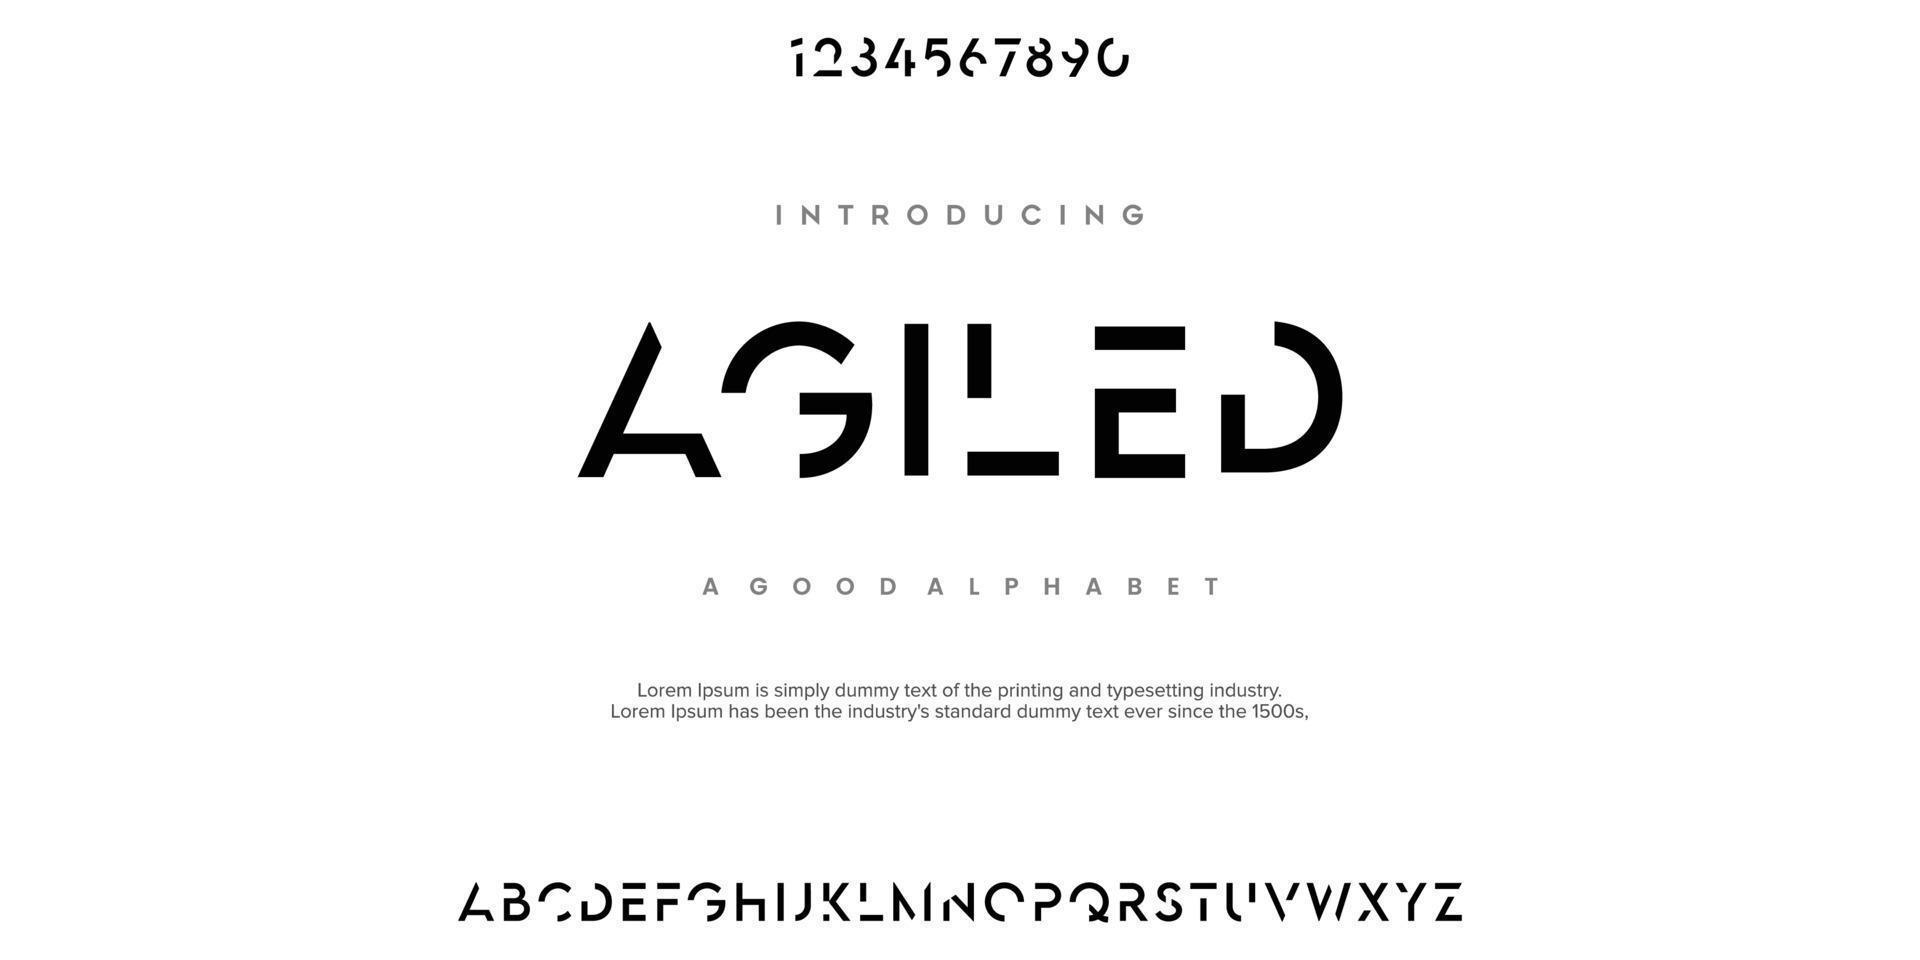 ágiles fuentes de alfabeto abstracto minimalista moderno. tecnología de tipografía, electrónica, película, digital, música, futuro, fuente creativa del logotipo. ilustración vectorial vector